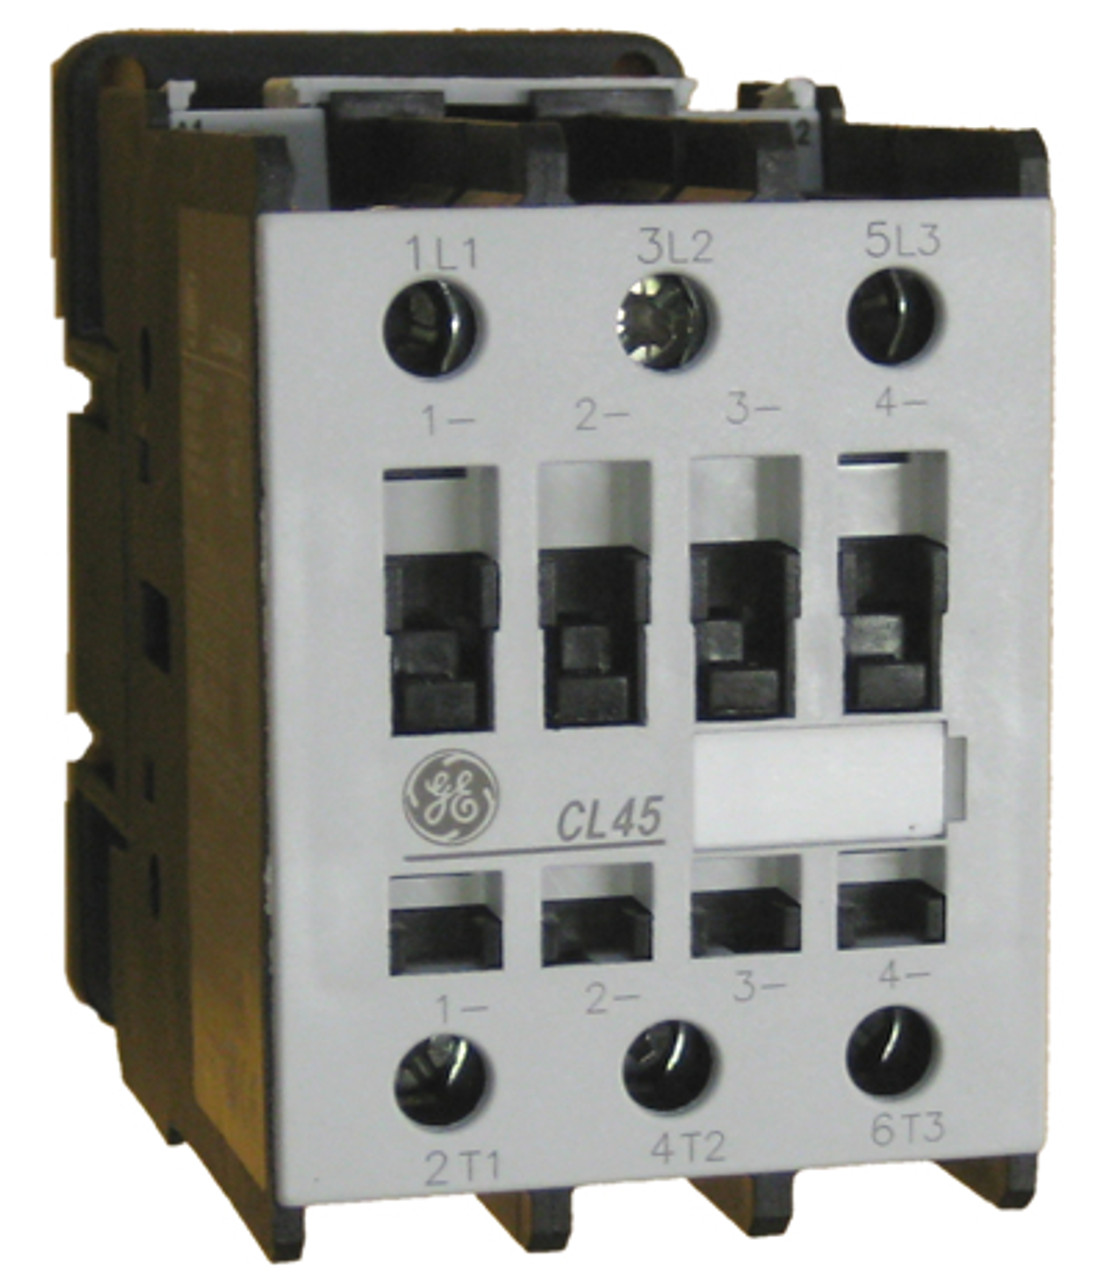 GE CL45 contactor